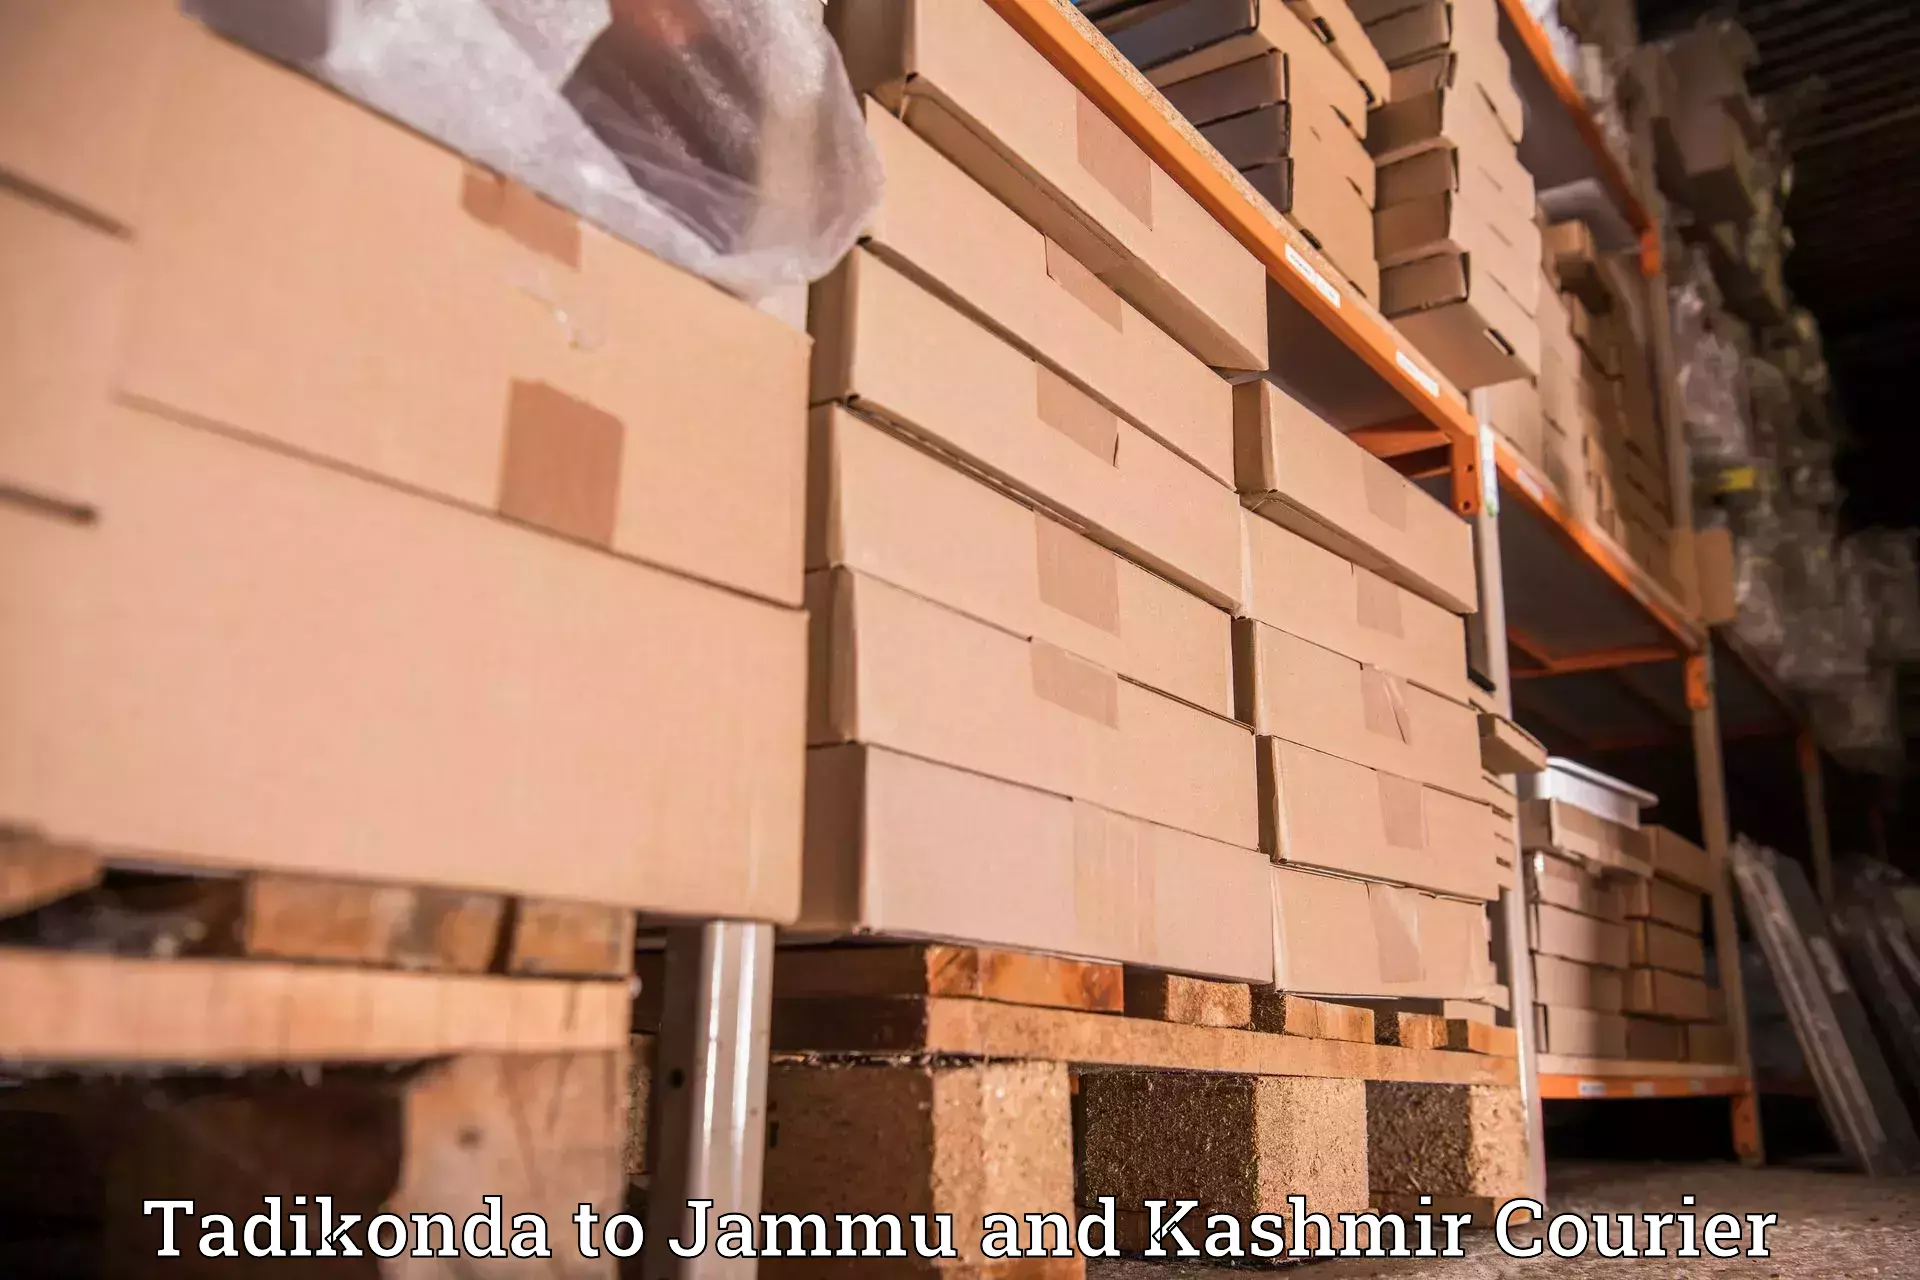 Cargo delivery service Tadikonda to Ranbir Singh Pura